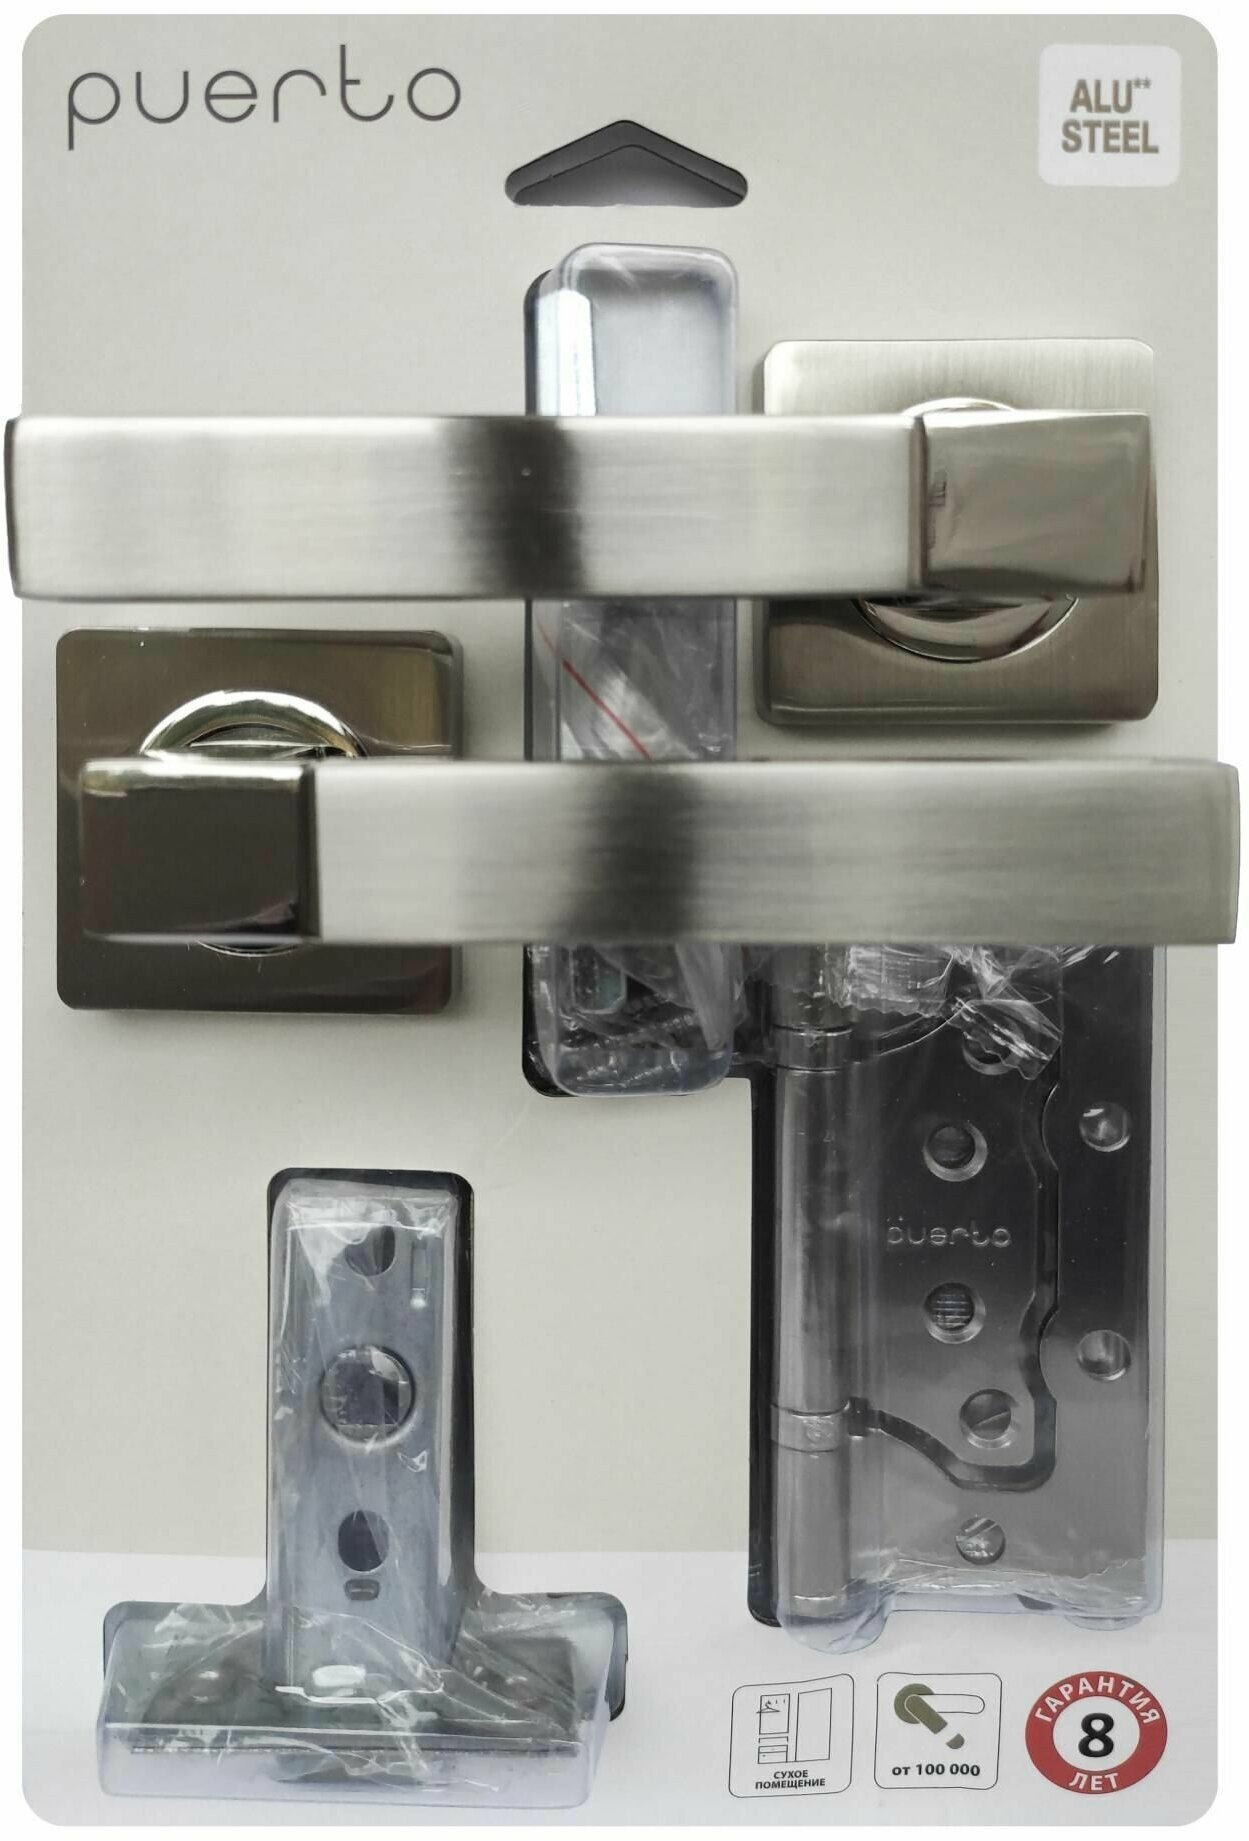 Комплект для межкомнатной двери PUERTO ручки 521-02 + защелка 5-45 PL + петли 2ШТ, Никель матовый/никель блестящий